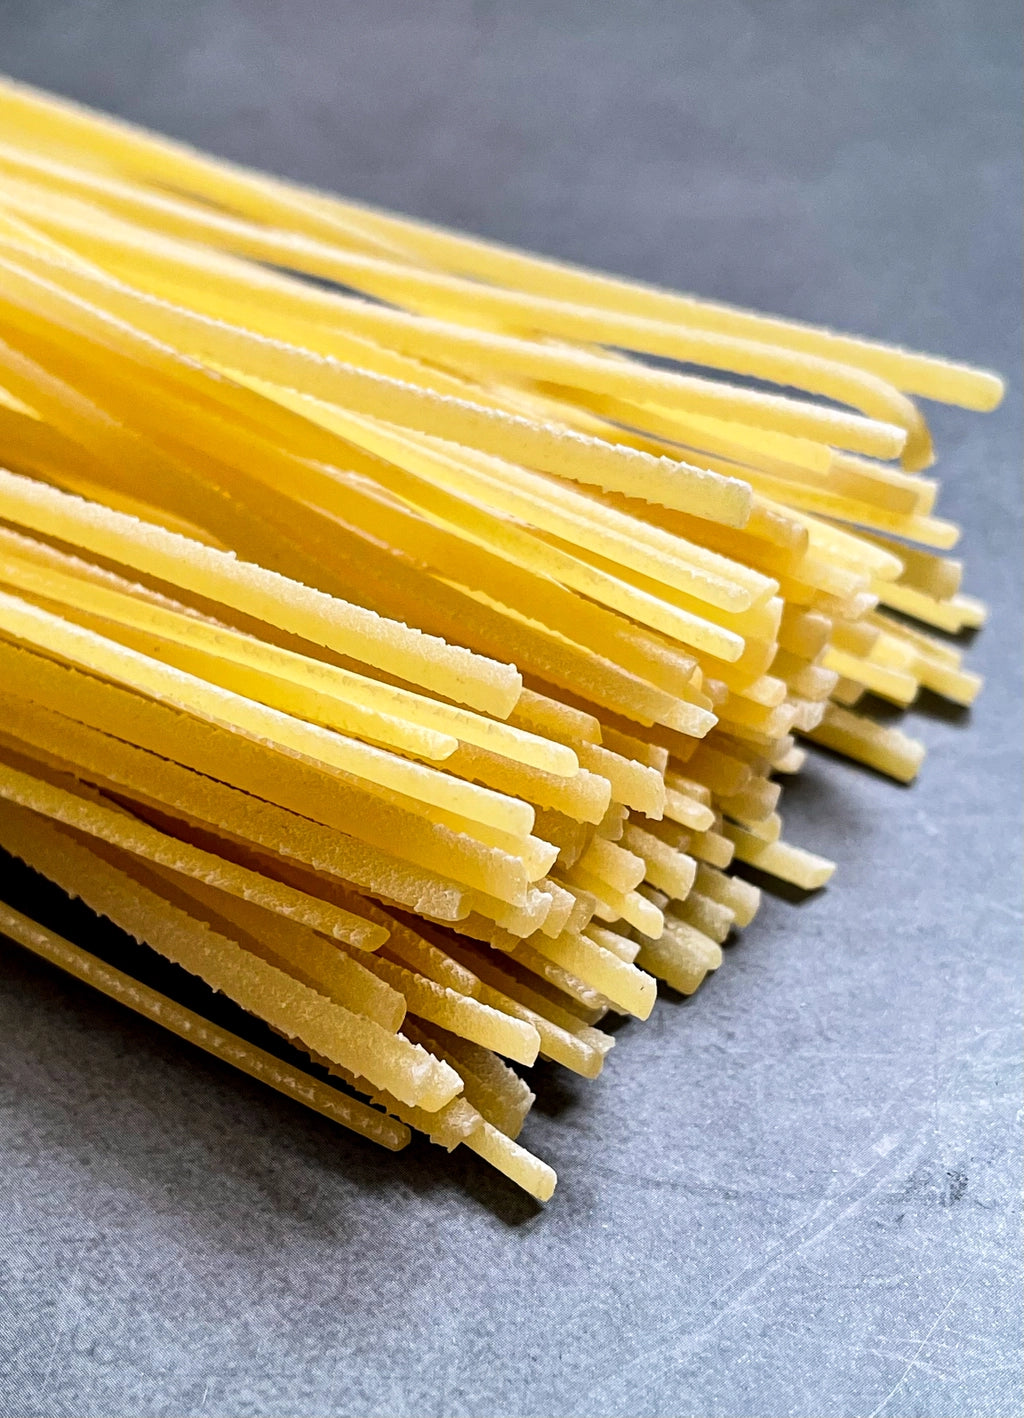 Linguini - pasta artesanal 100% italiana